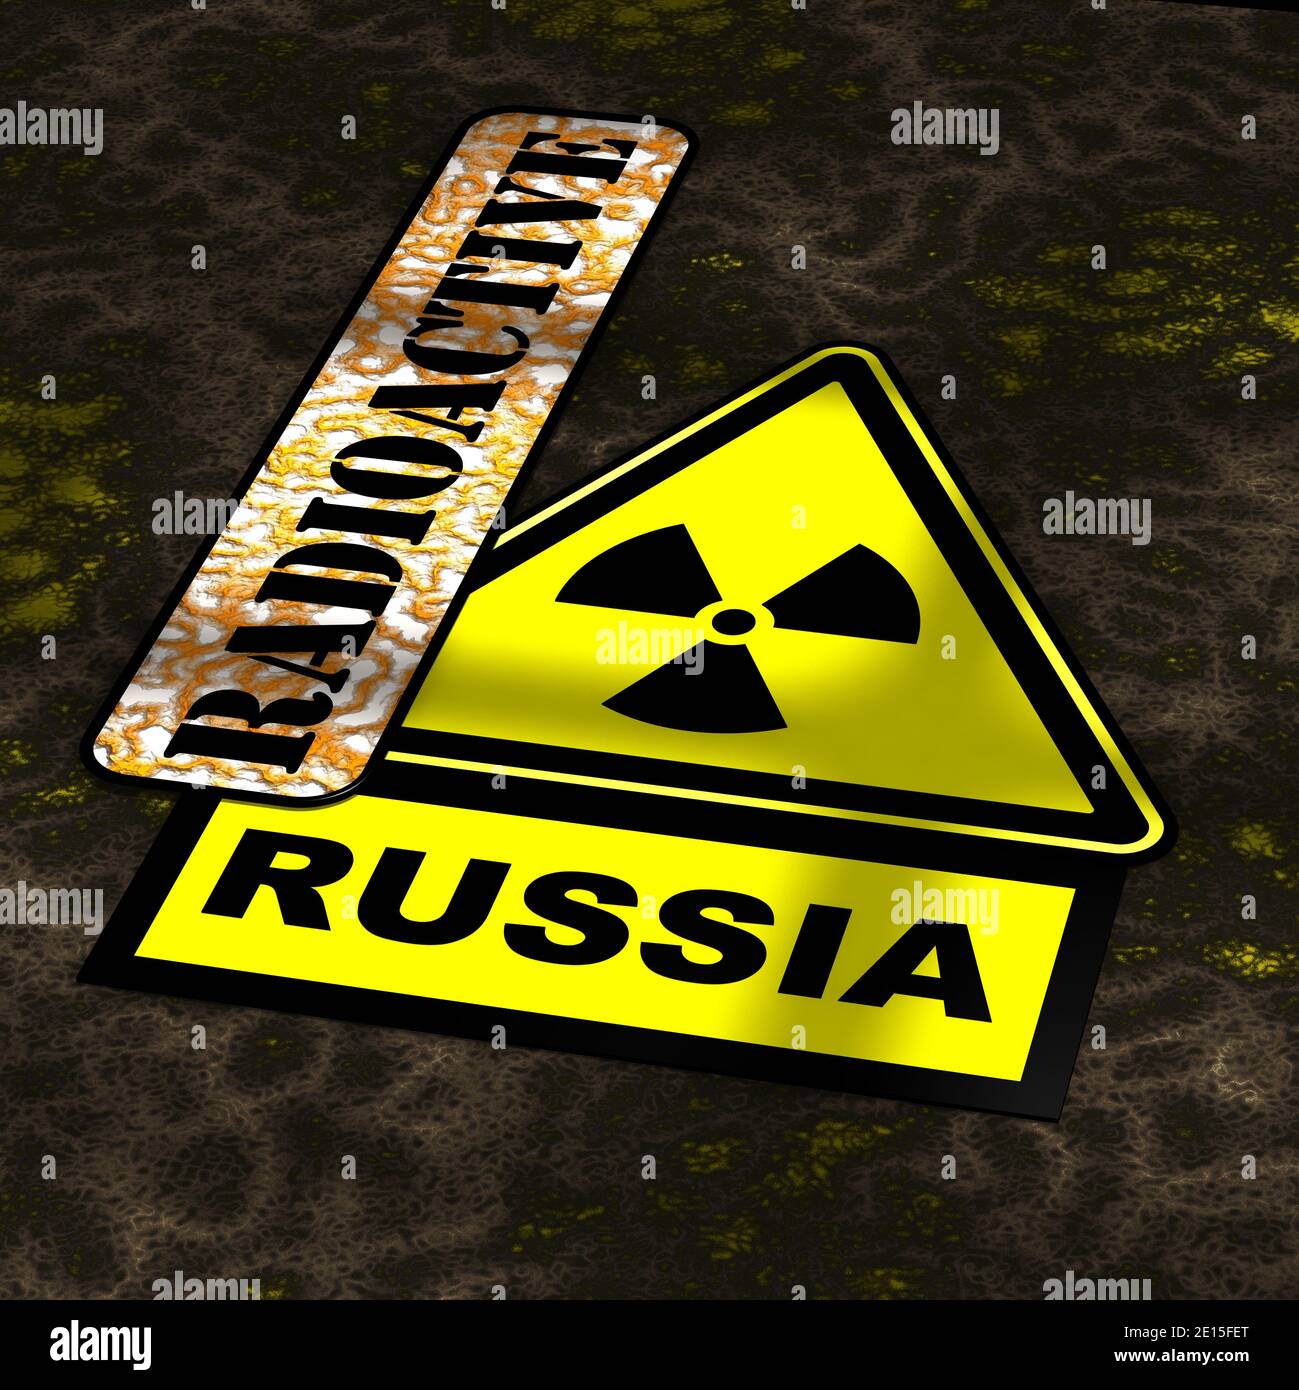 Strahlenbelastung in Russland. Ein Warnzeichen gelb radioaktive Gefahr mit der Tabelle markiert RADIOAKTIV und RUSSLAND liegen auf dem gefährlichen Boden Stockfoto